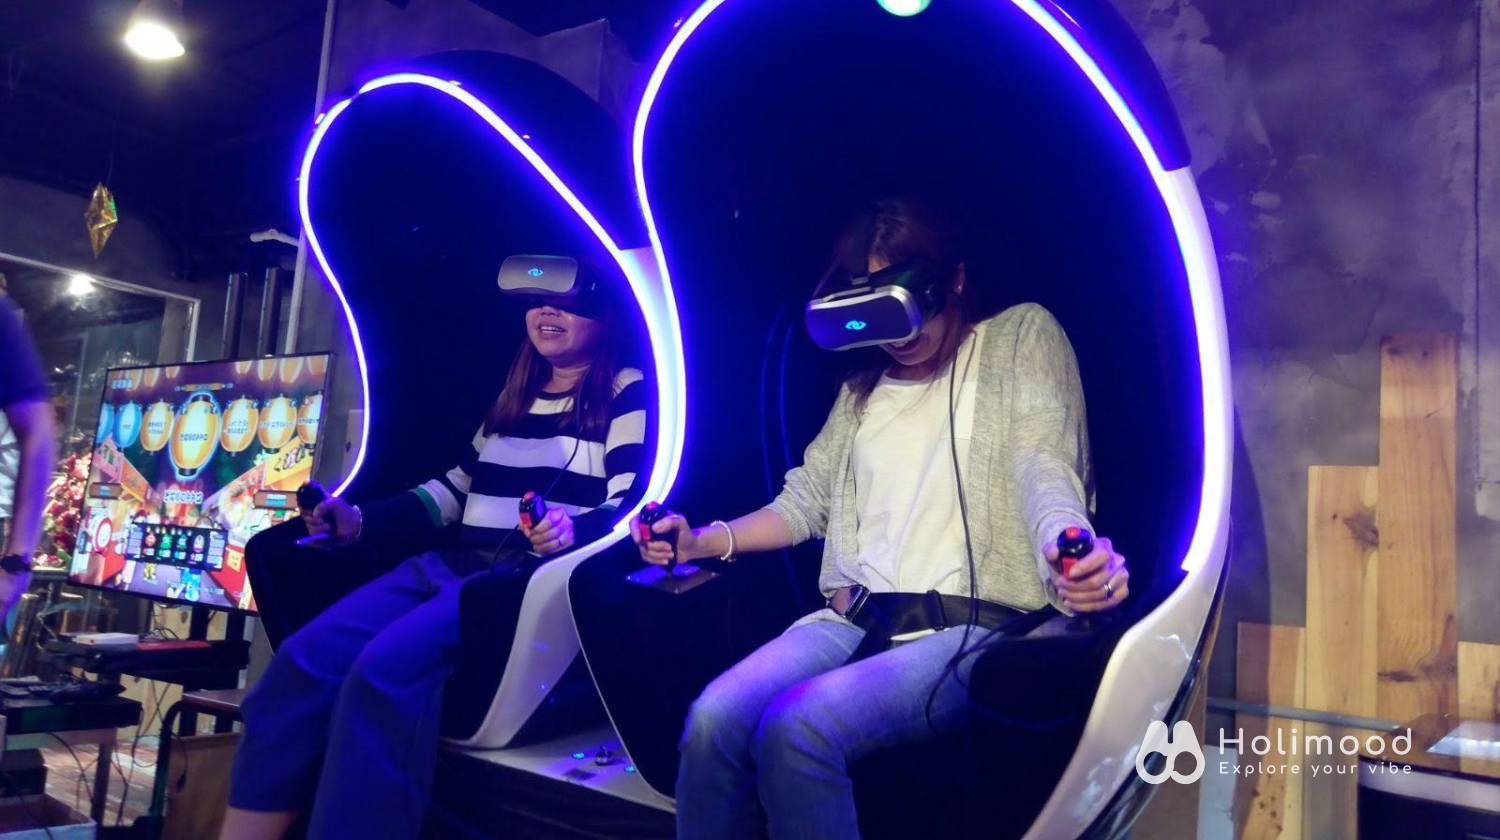 V-Owl Station VR Party 虛擬實境體驗站 【VR體驗】90分鐘特選VR故事遊戲 (送4D動感太空艙體驗) 2